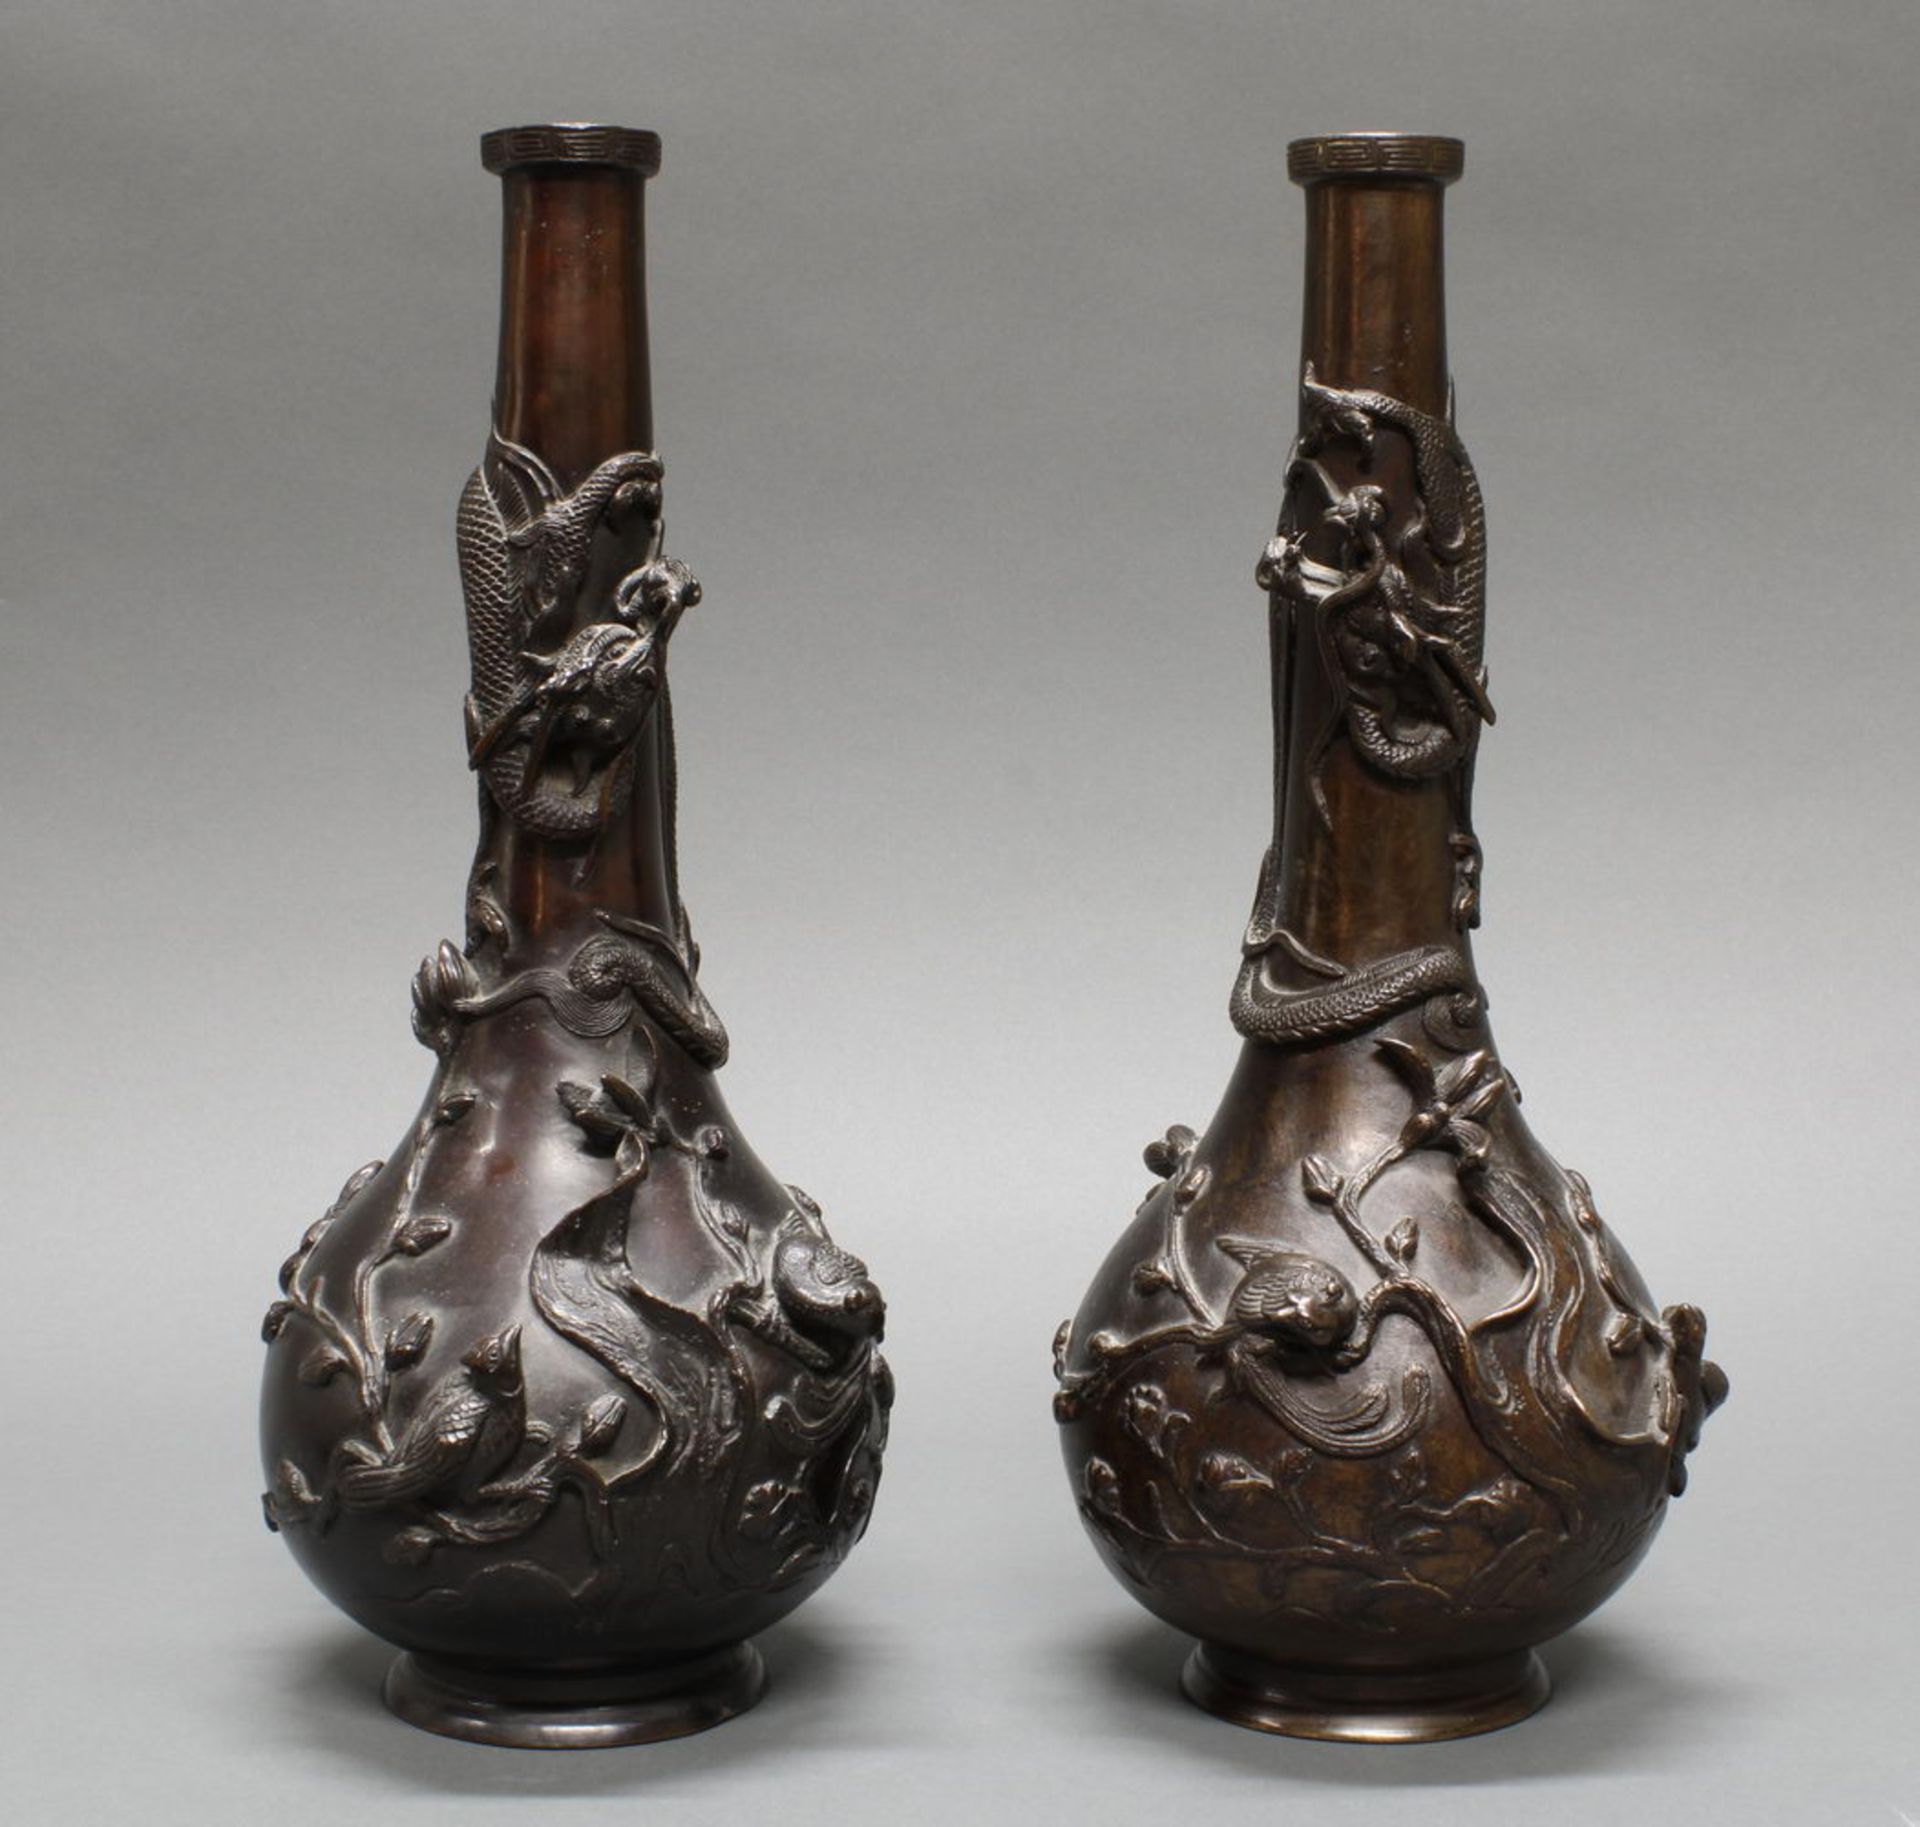 Paar Flaschenvasen, Japan, um 1900, Bronze, braun patiniert, plastischer Drachendekor, 36 cm hoch,